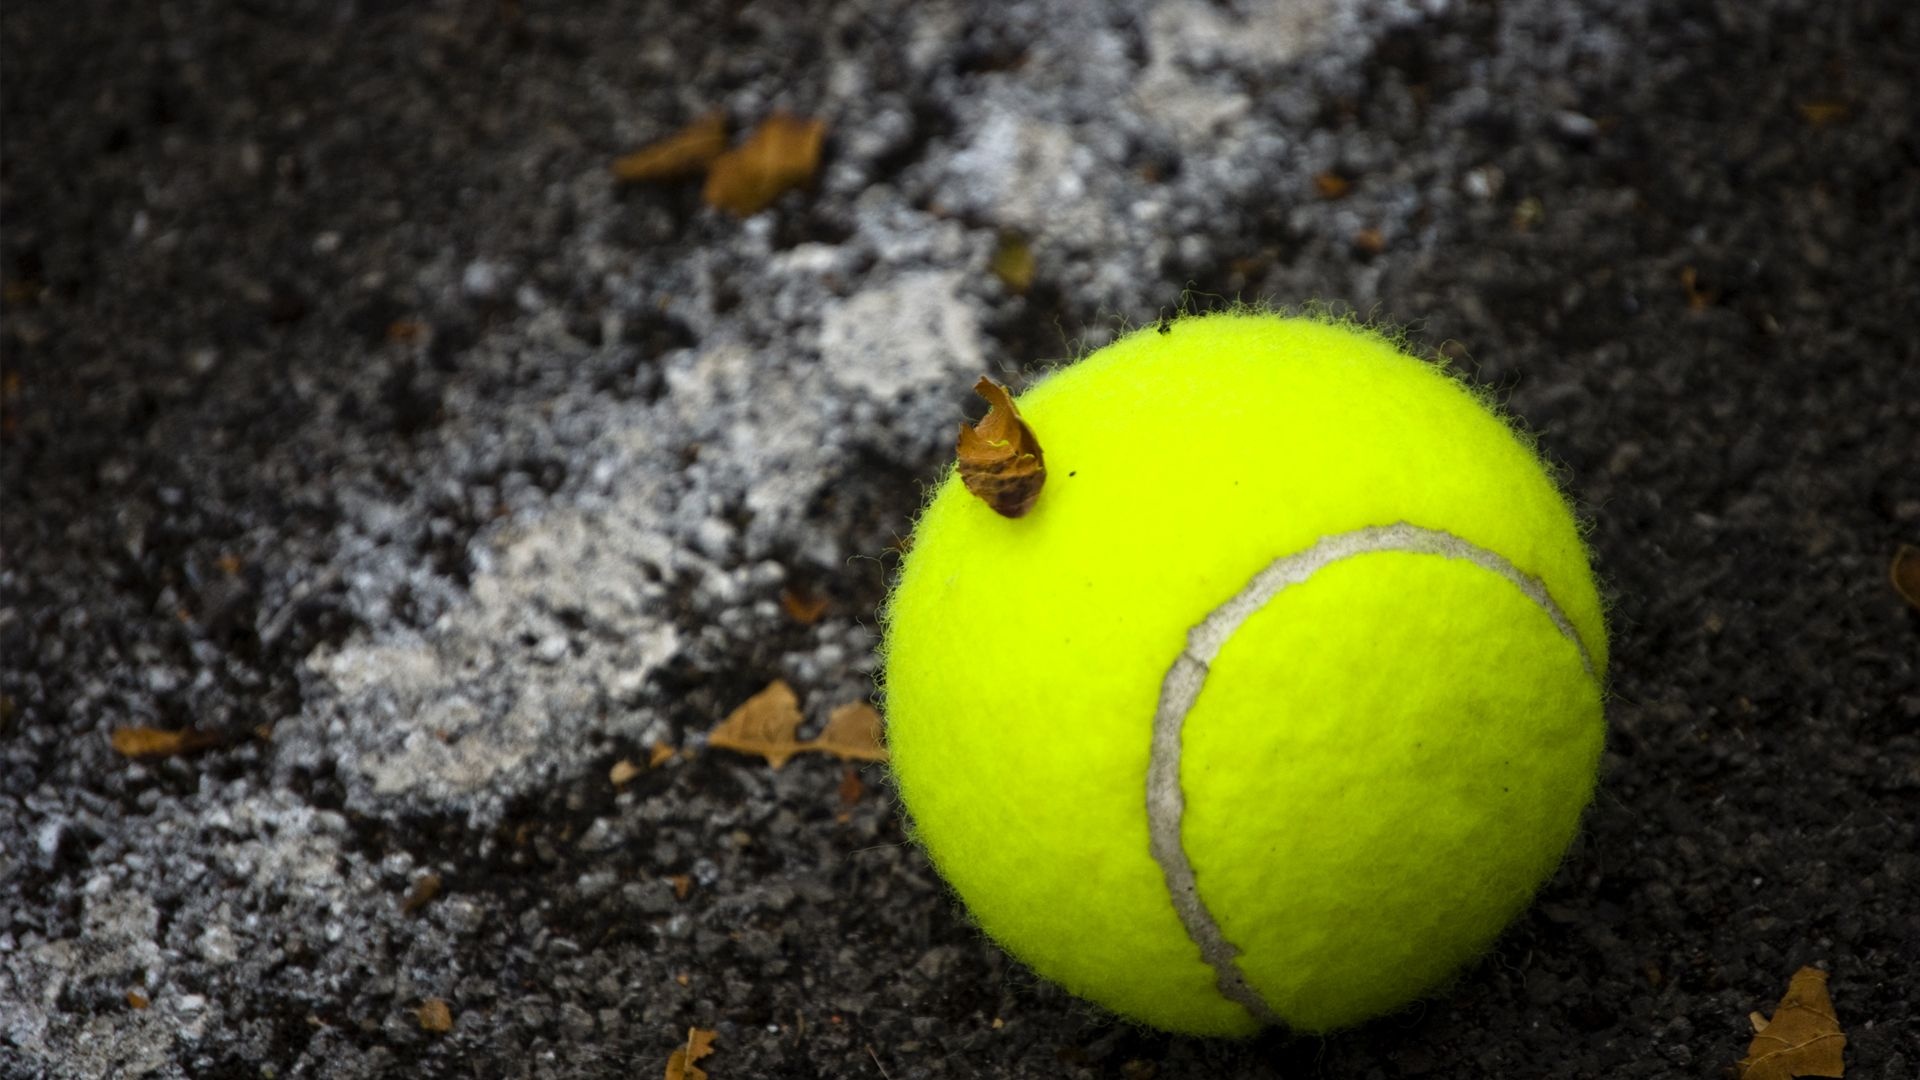 Tennis ball, On-court action, Racket sport, Professional match, 1920x1080 Full HD Desktop